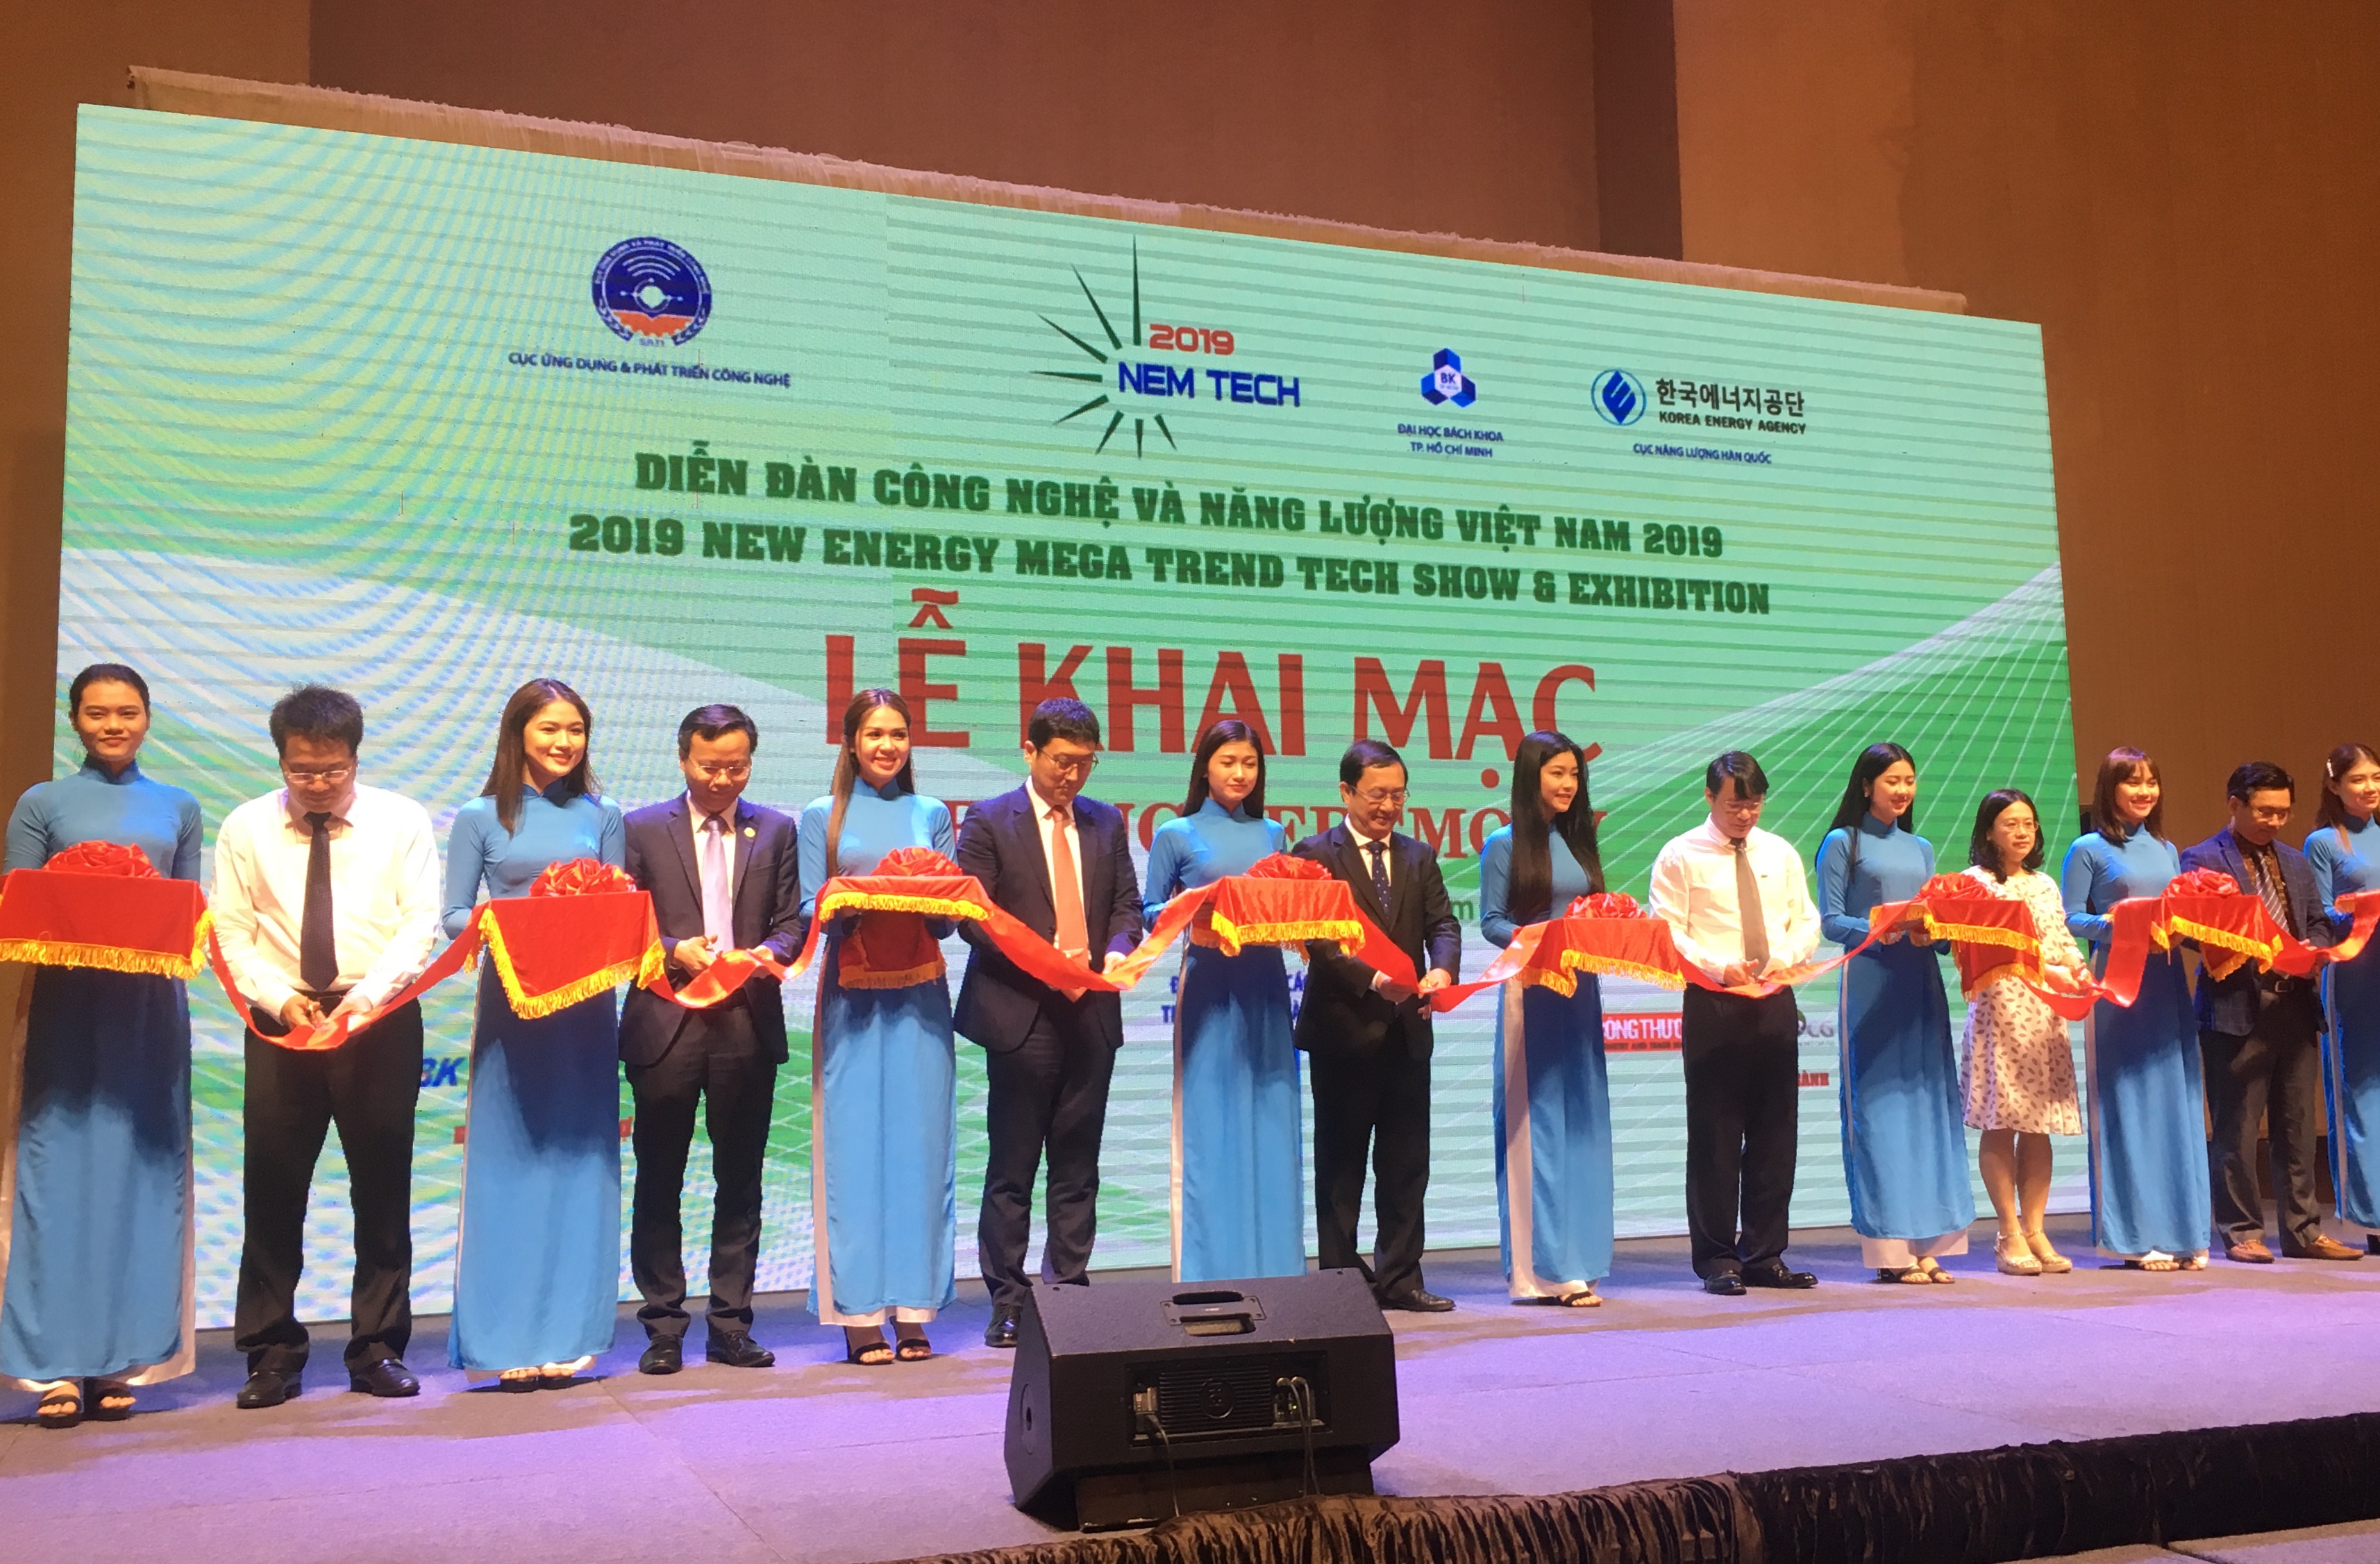 Lễ khai mạc Diễn đàn Công nghệ và Năng lượng Việt Nam năm 2019 tại TP. HCM.